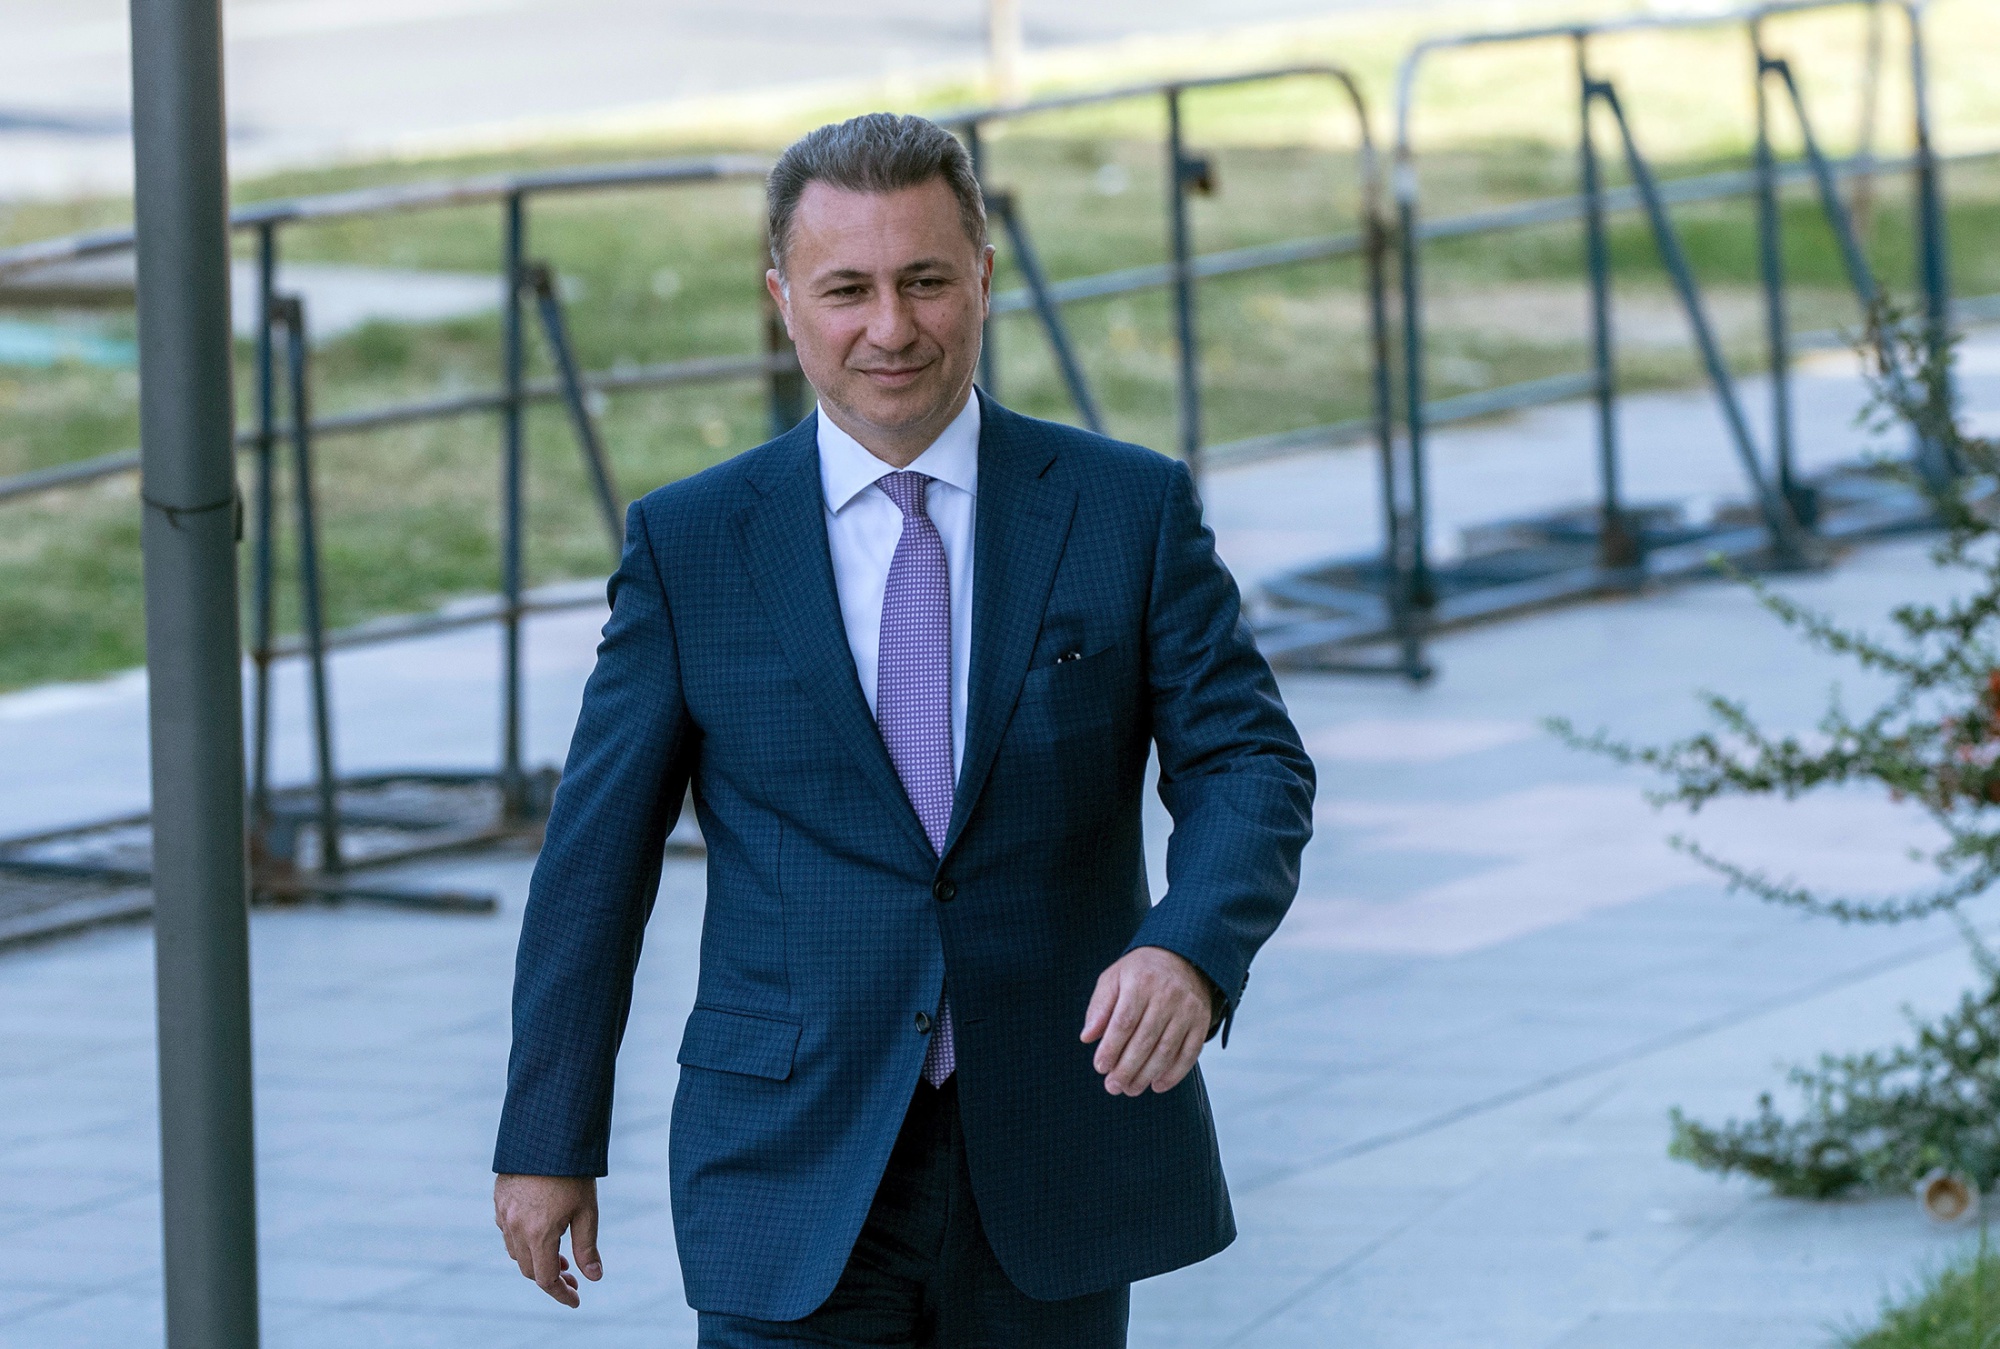 Nëntë vjet burgim më pak për Gruevskin